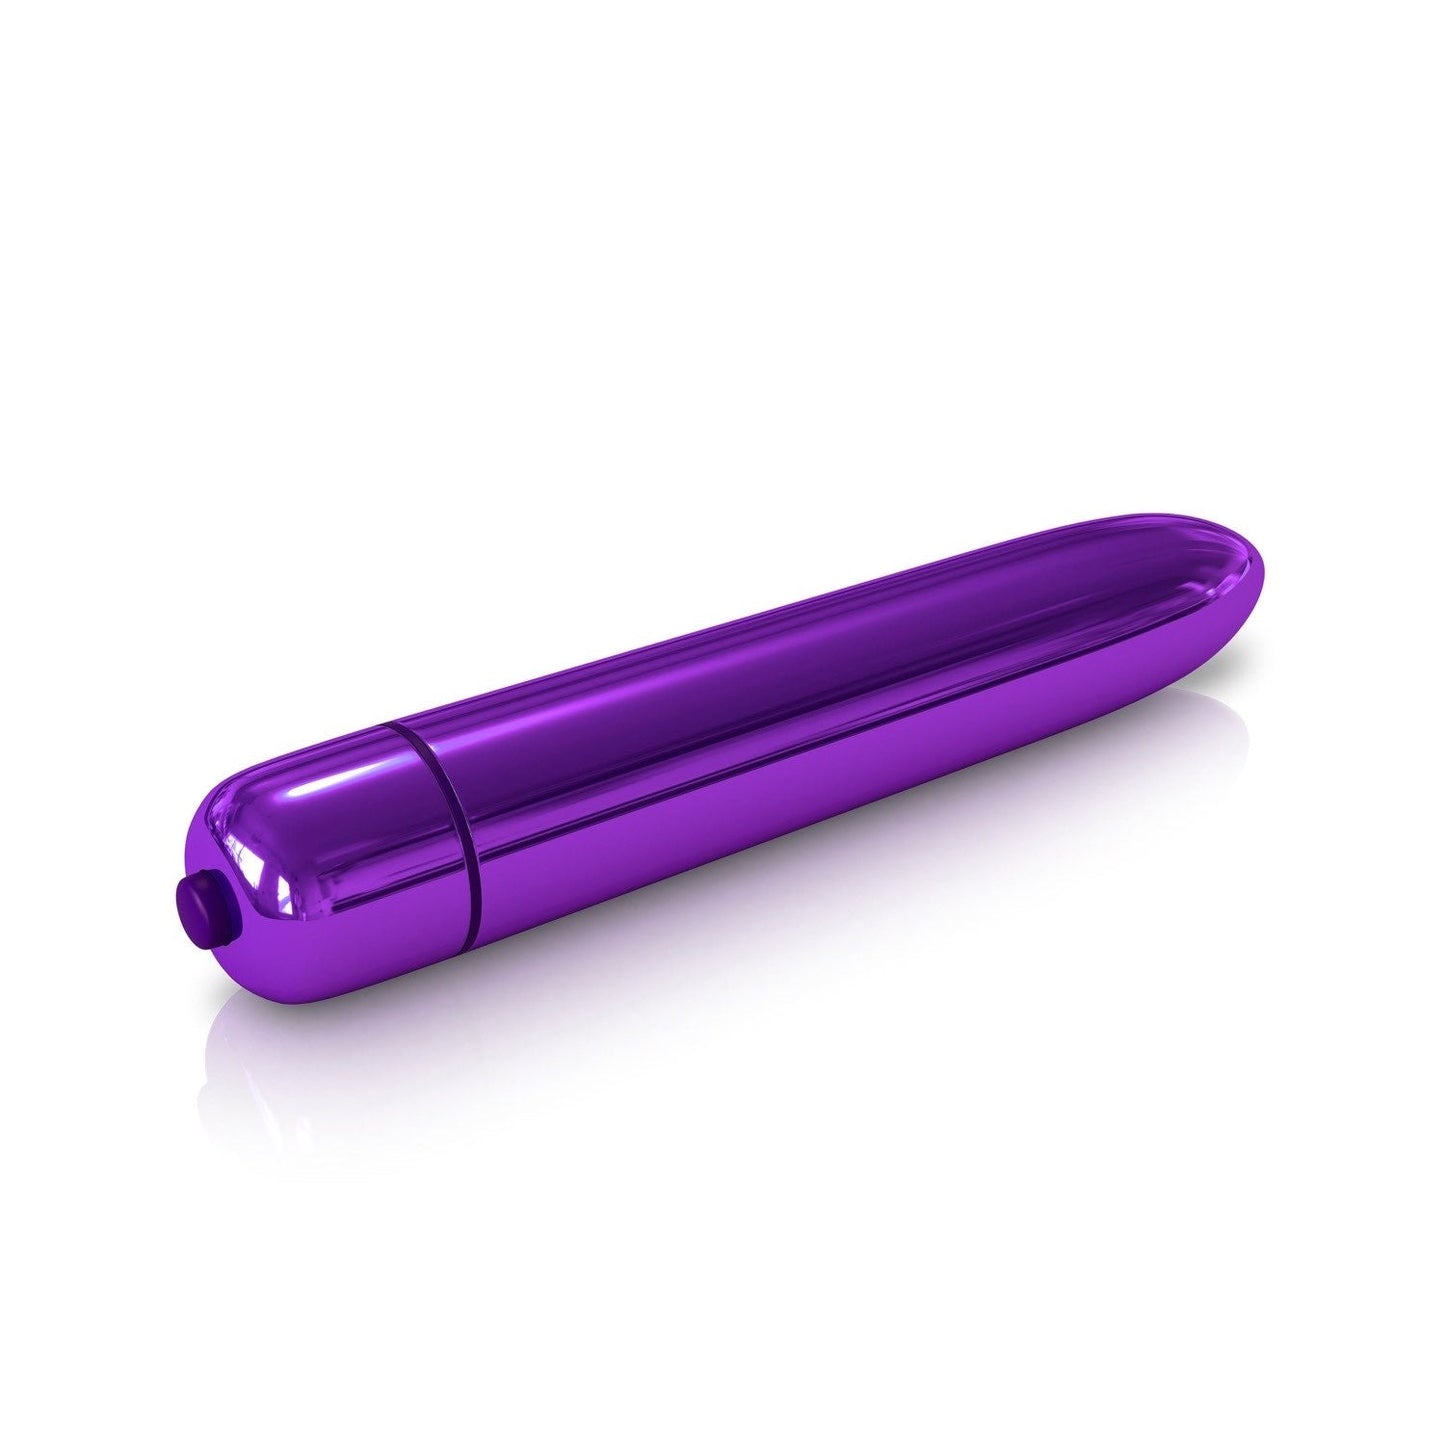 火箭子弹 - 金属紫色 8.9 厘米子弹